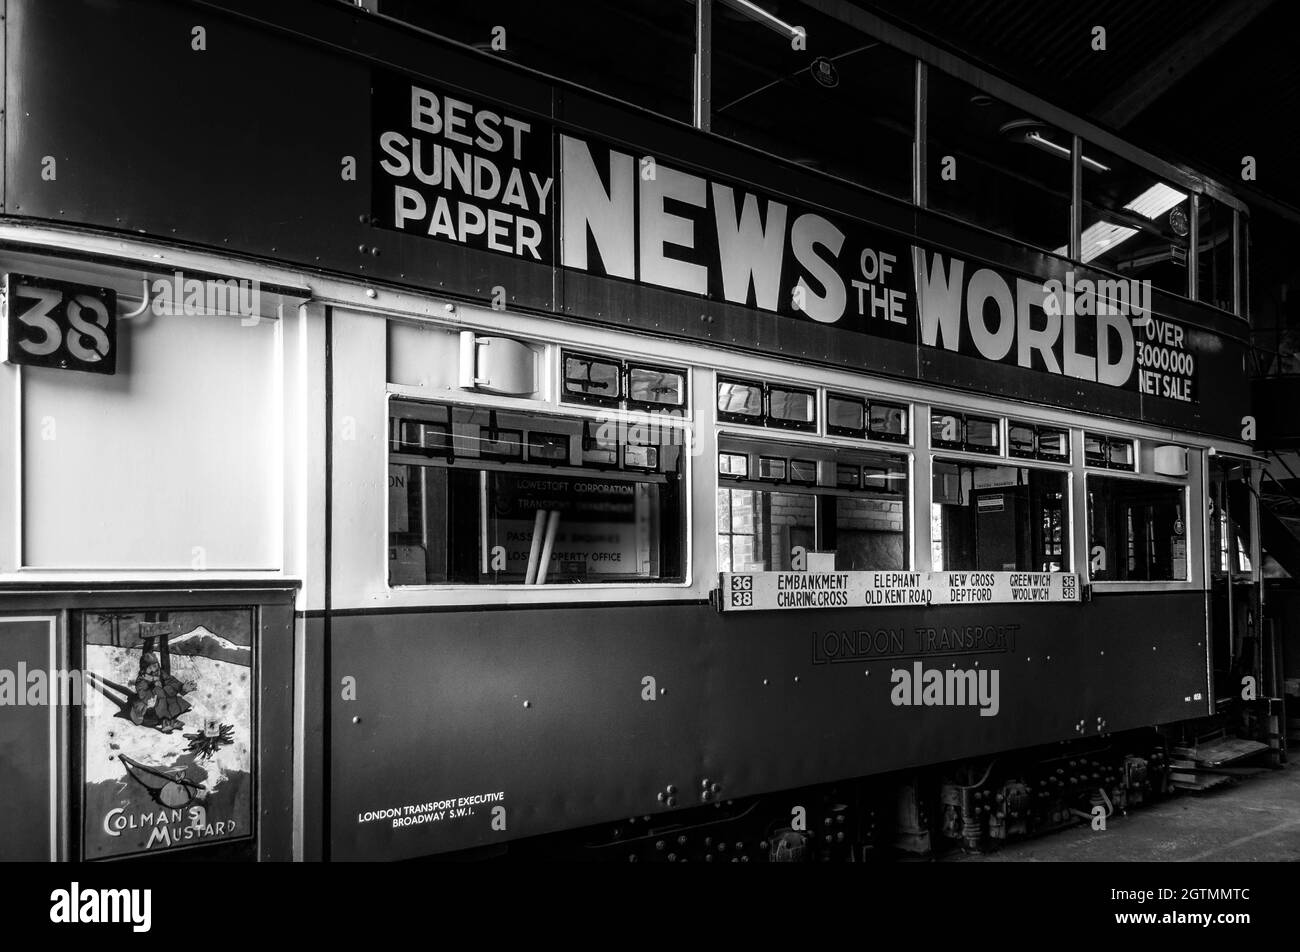 Image en noir et blanc de l'ancienne publicité de tram de Londres News of the World newspaper. Musée des transports près de Lowestoft. Personne. Banque D'Images